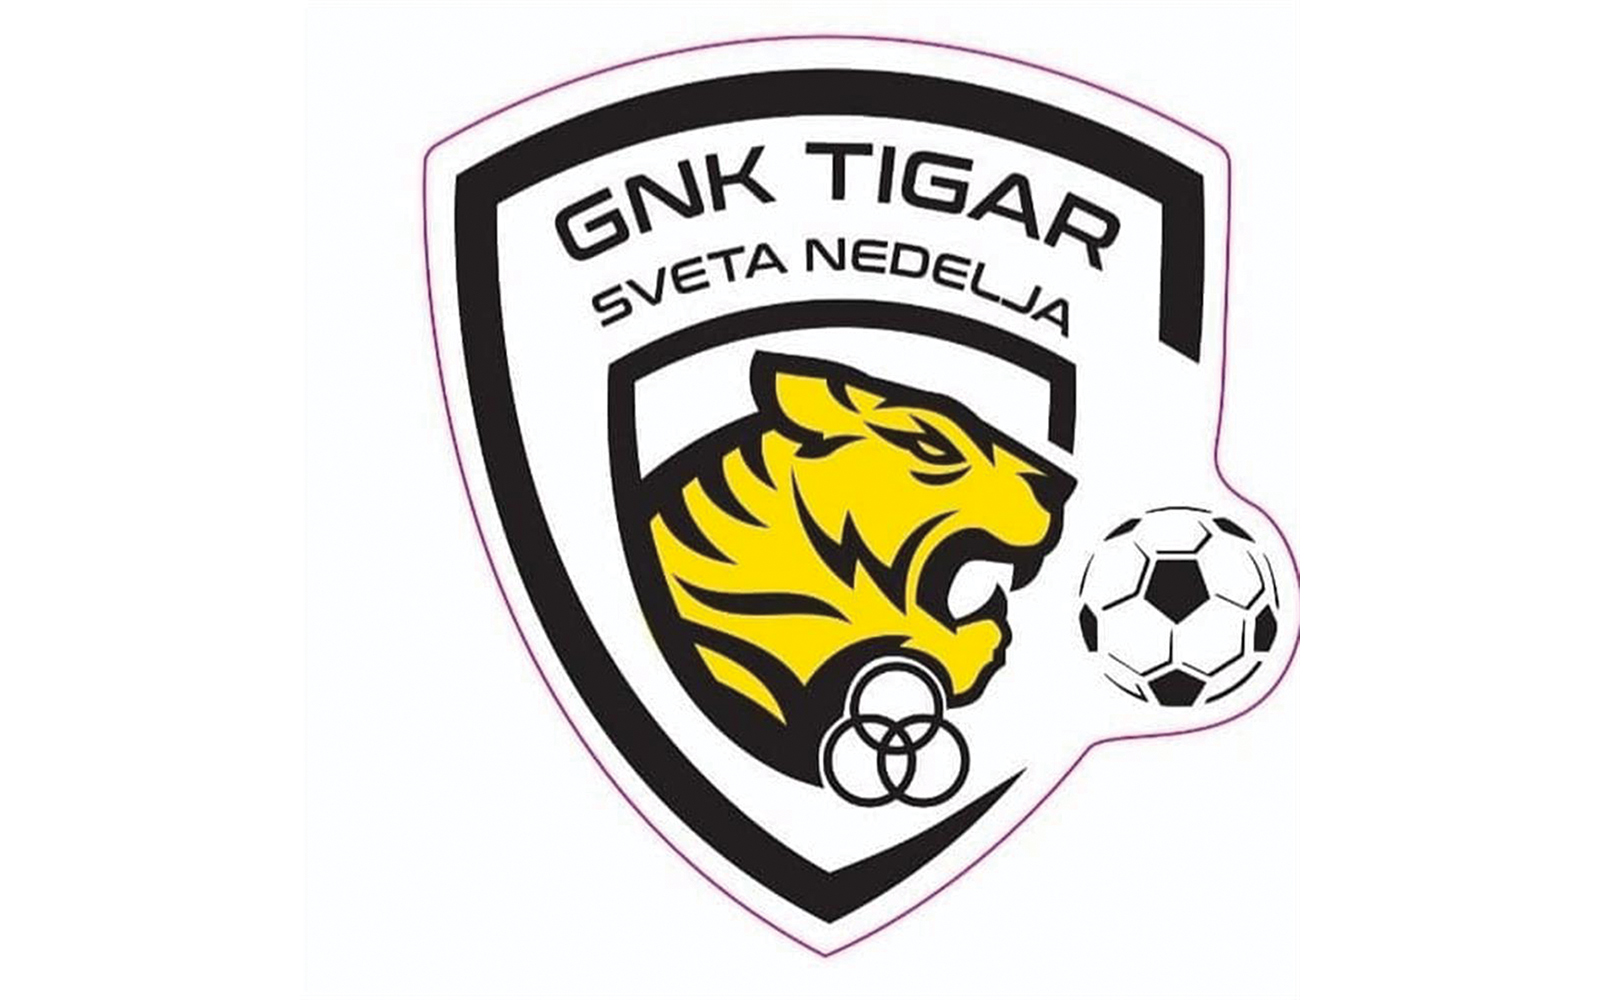 4. NL sredite Zagreb  B - 6. kolo
Tigar Sveta Nedelja - TOP 1:0 (0:0)